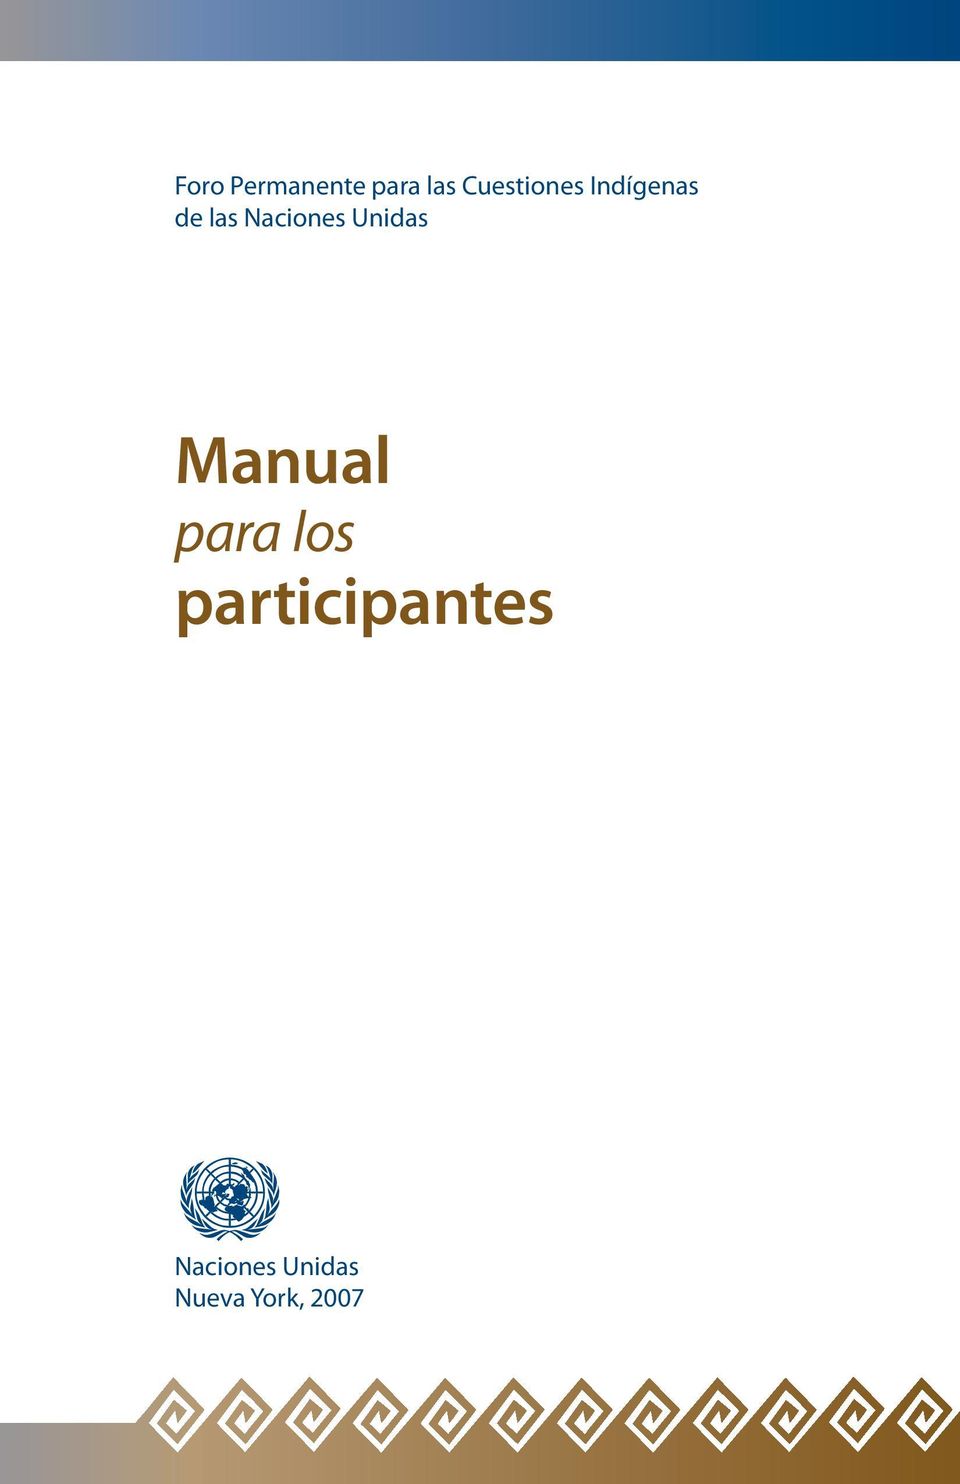 Naciones Unidas Manual para los